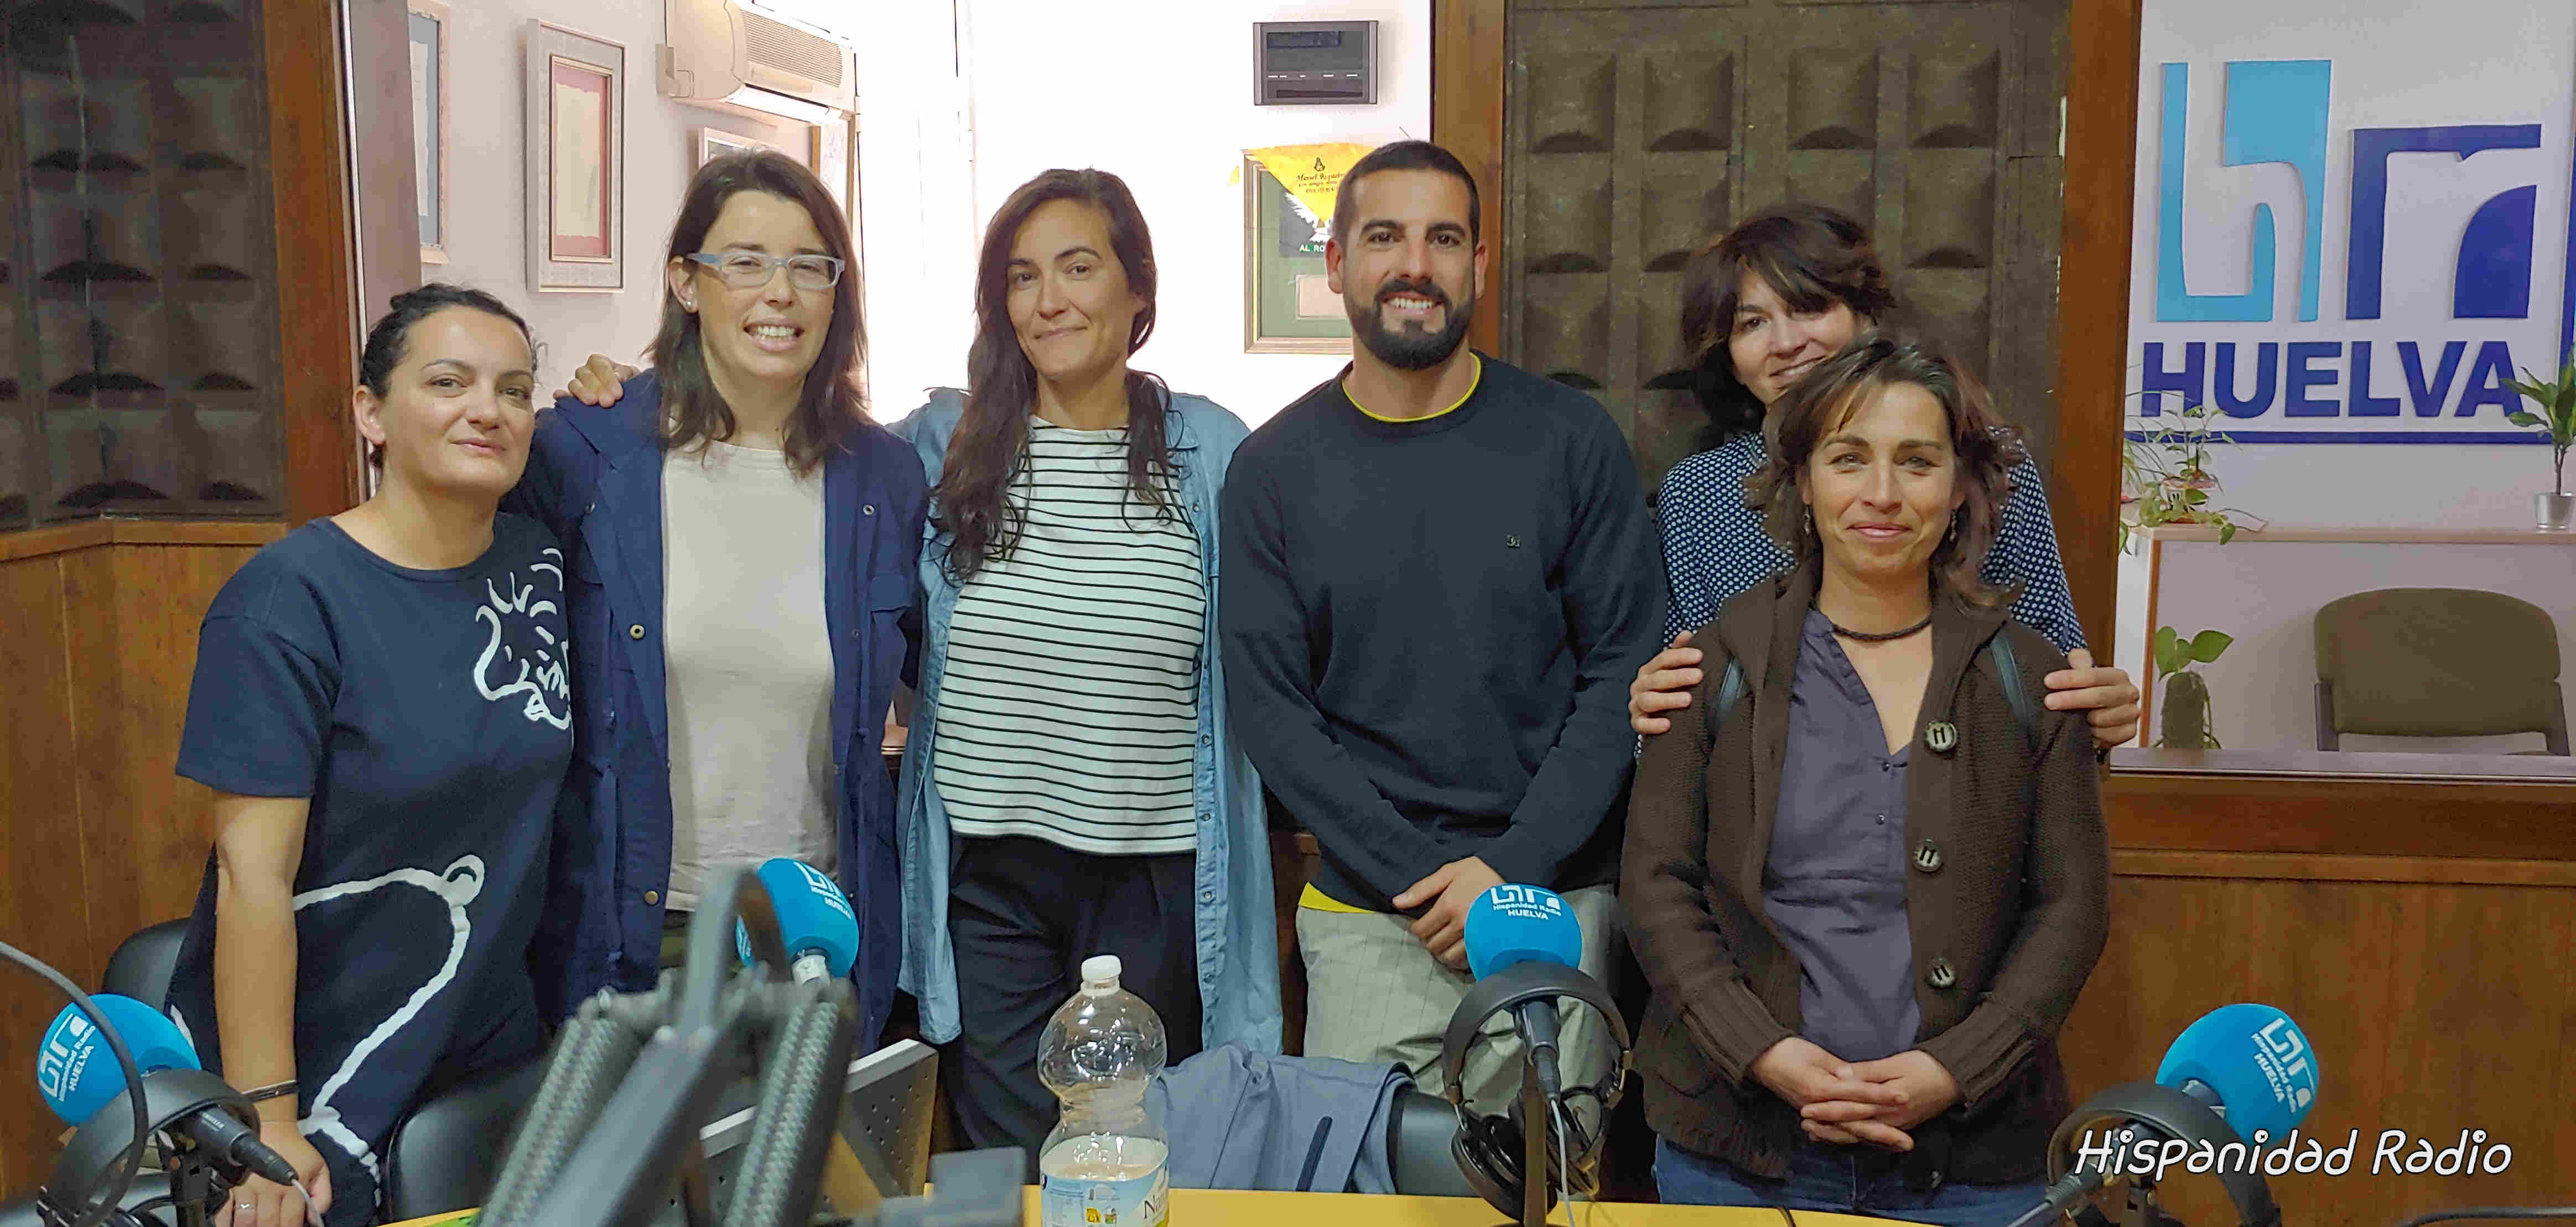 Queremos Saber 03-04-2019 Proyecto de Cooperacion Internacional de Diputación de Huelva y Encuentros del Sur